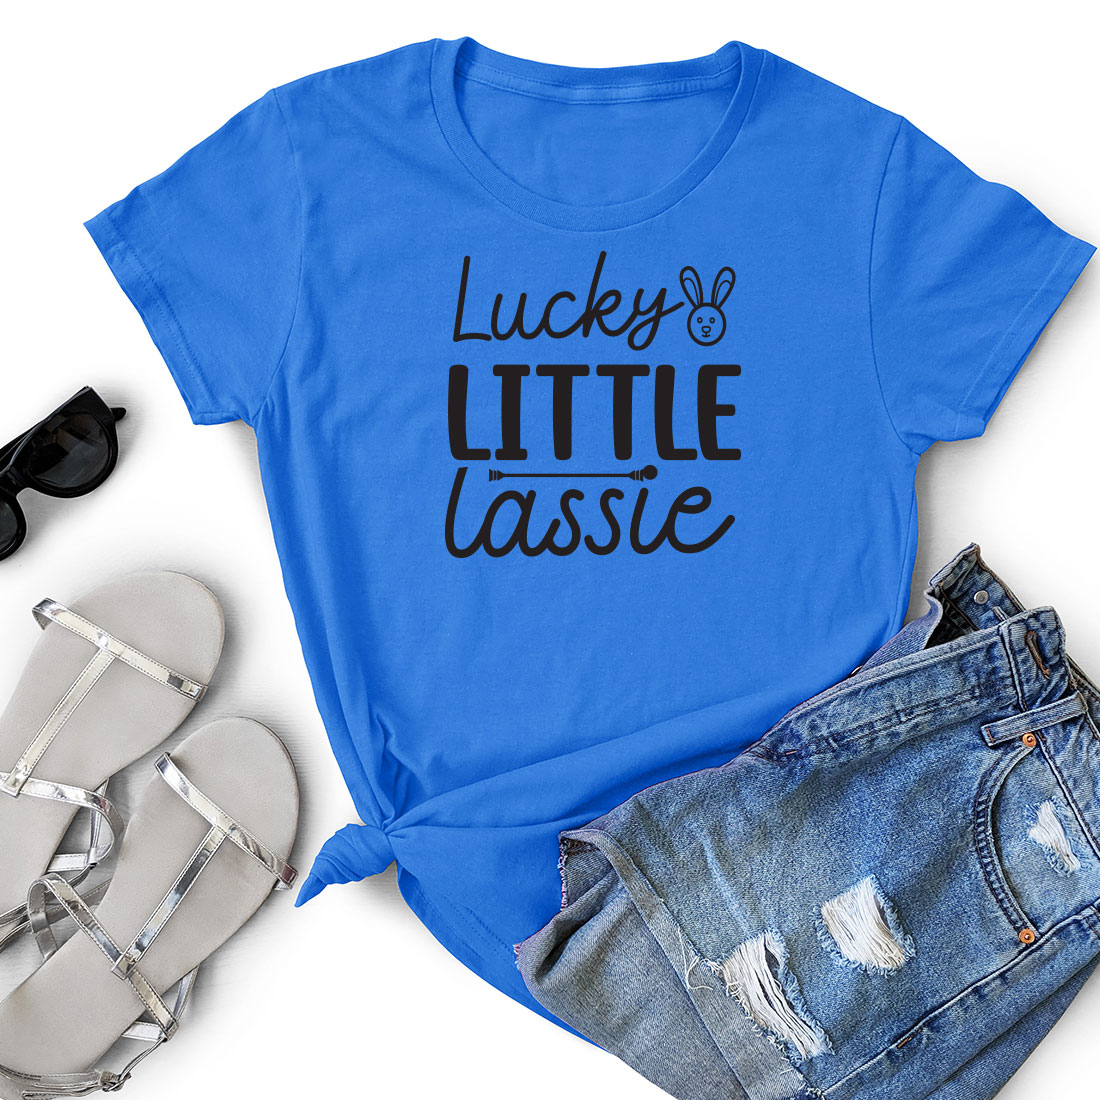 T - shirt that says lucky little lass.